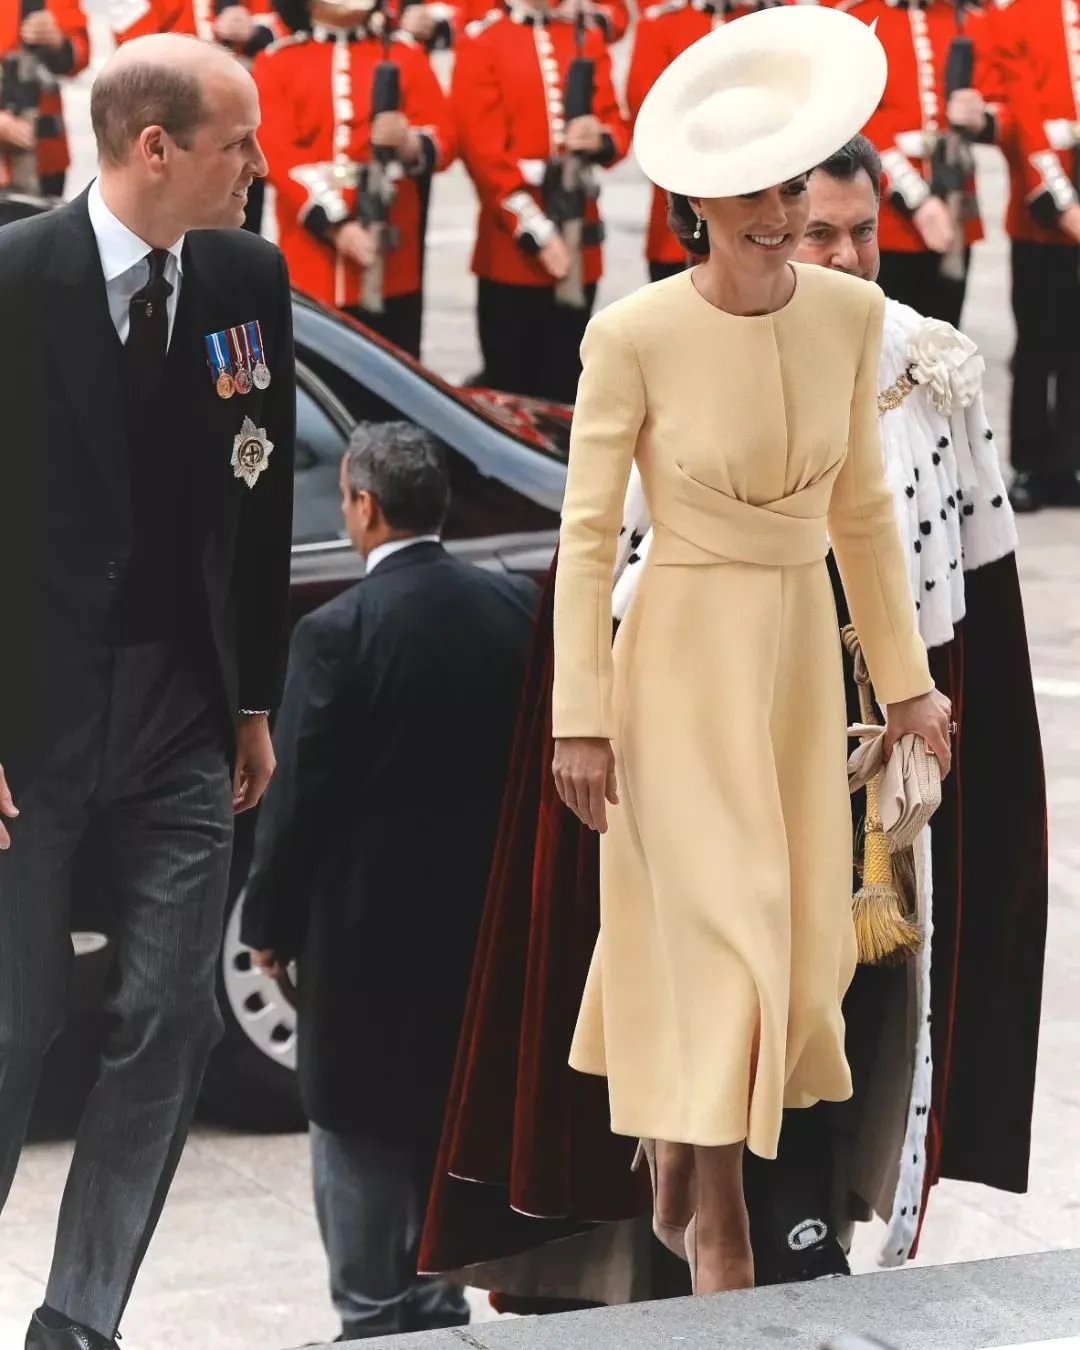 احتفالات اليوبيل البلاتيني للملكة اليزابيث مستمرّة بقداس الشكر... لكن من دون حضور الملكة!